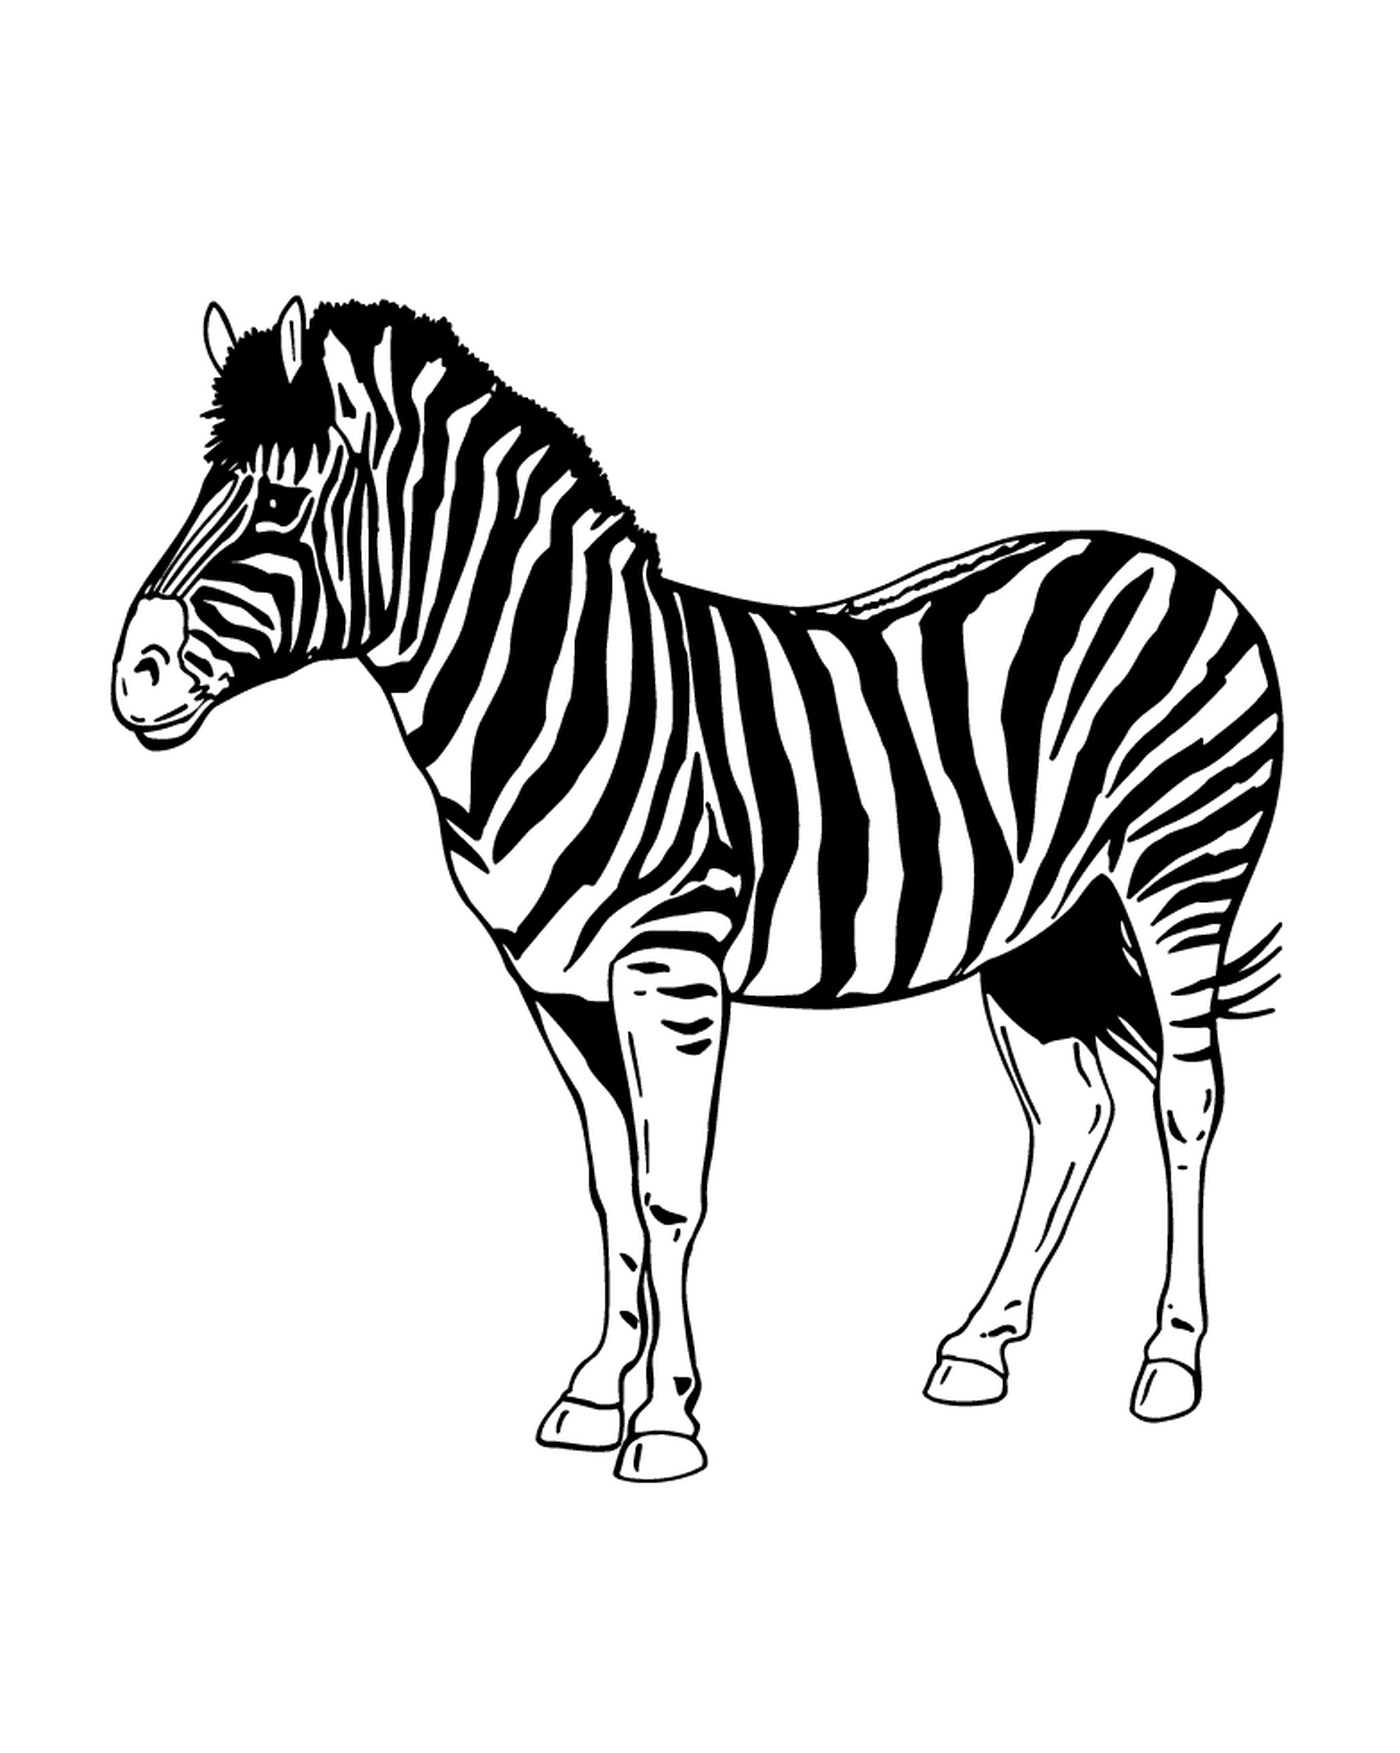  Capturando e misteriosa Zebra 